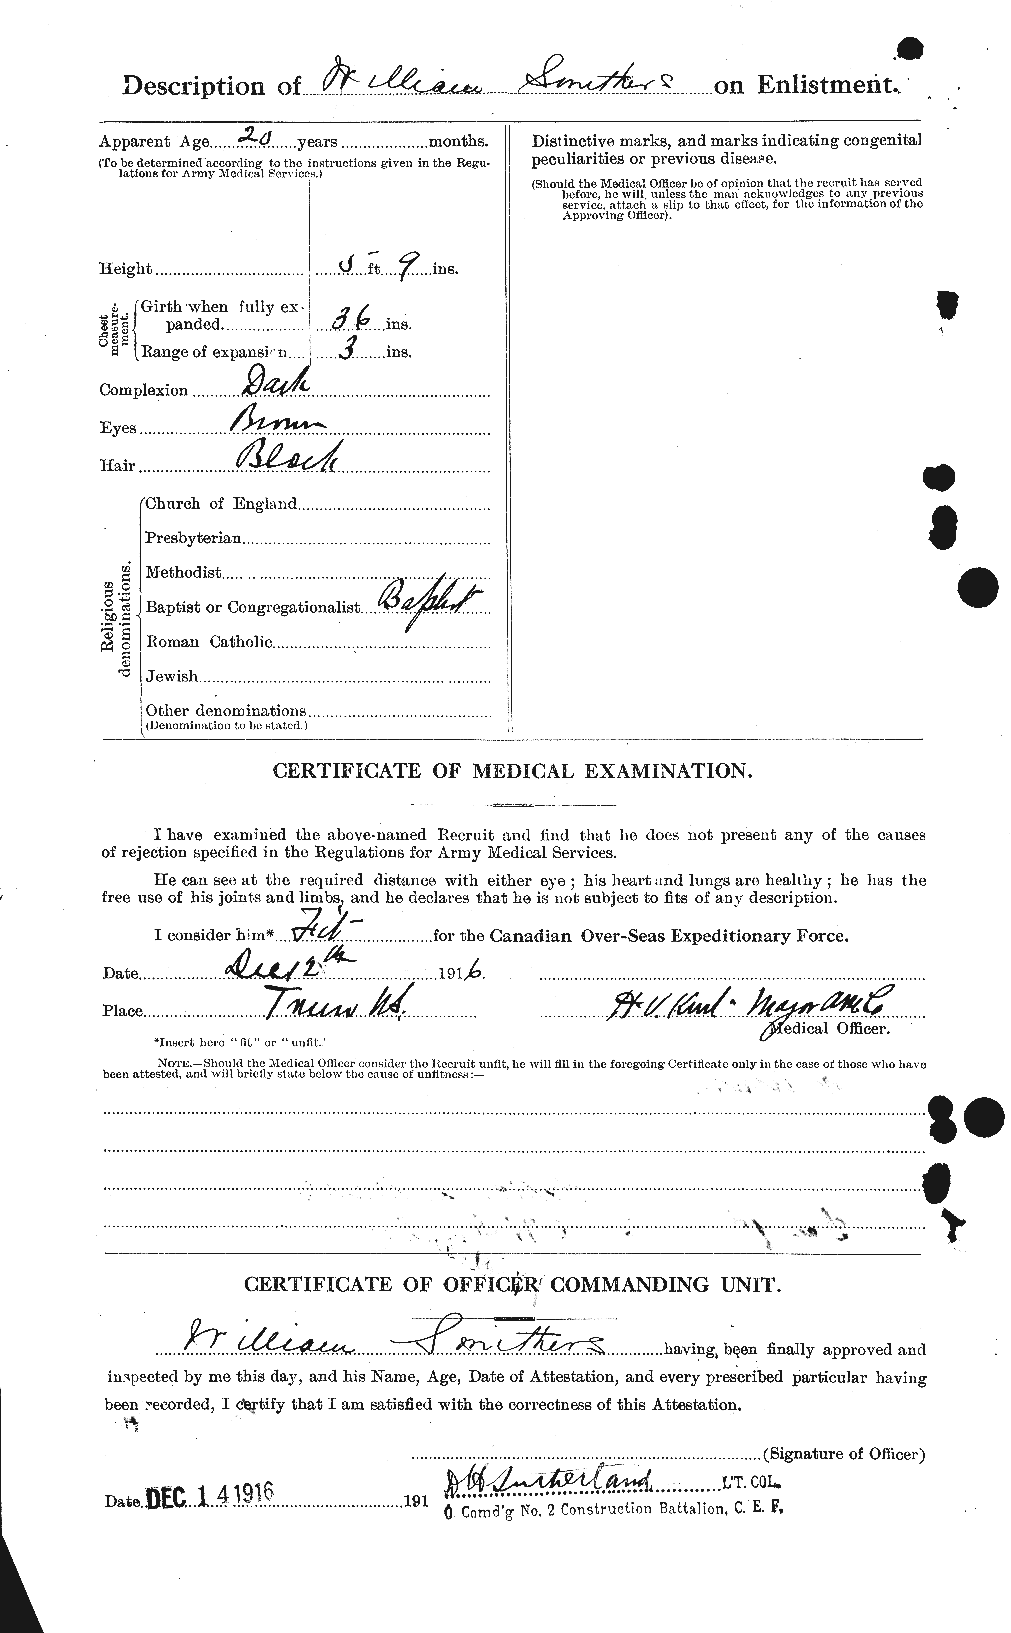 Dossiers du Personnel de la Première Guerre mondiale - CEC 107218b